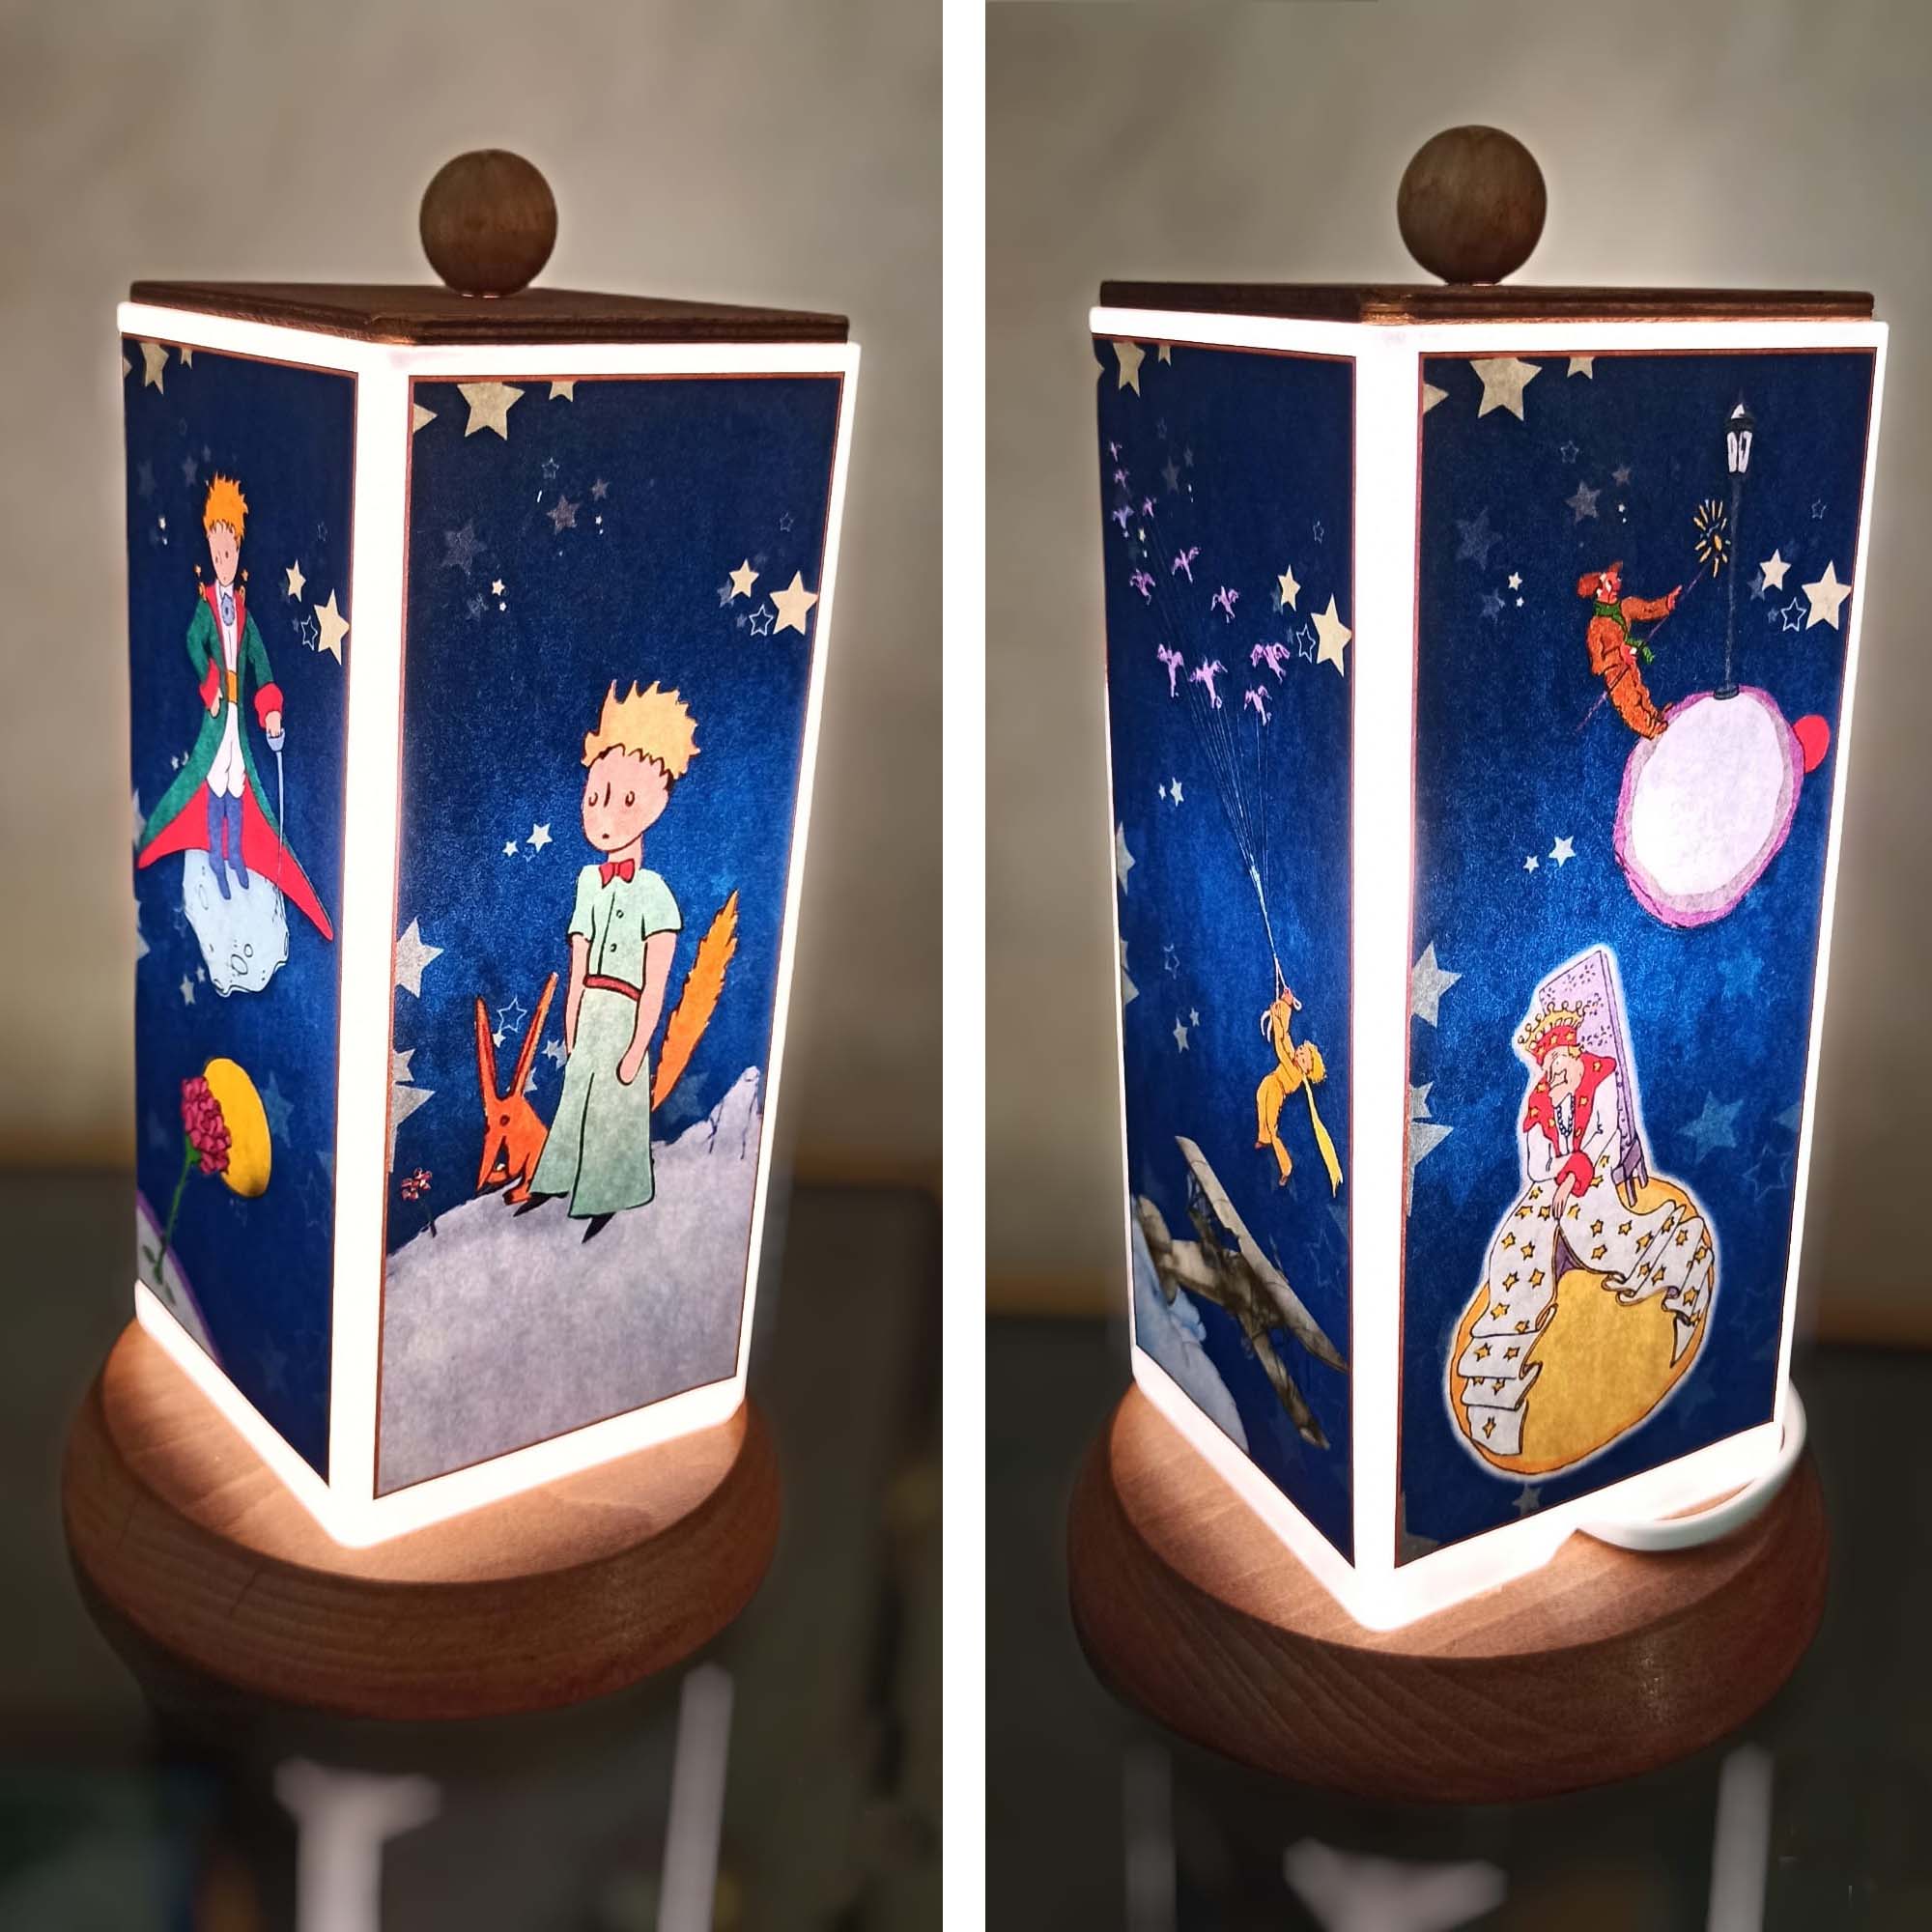 Lampada “Piccolo Principe” con carillon